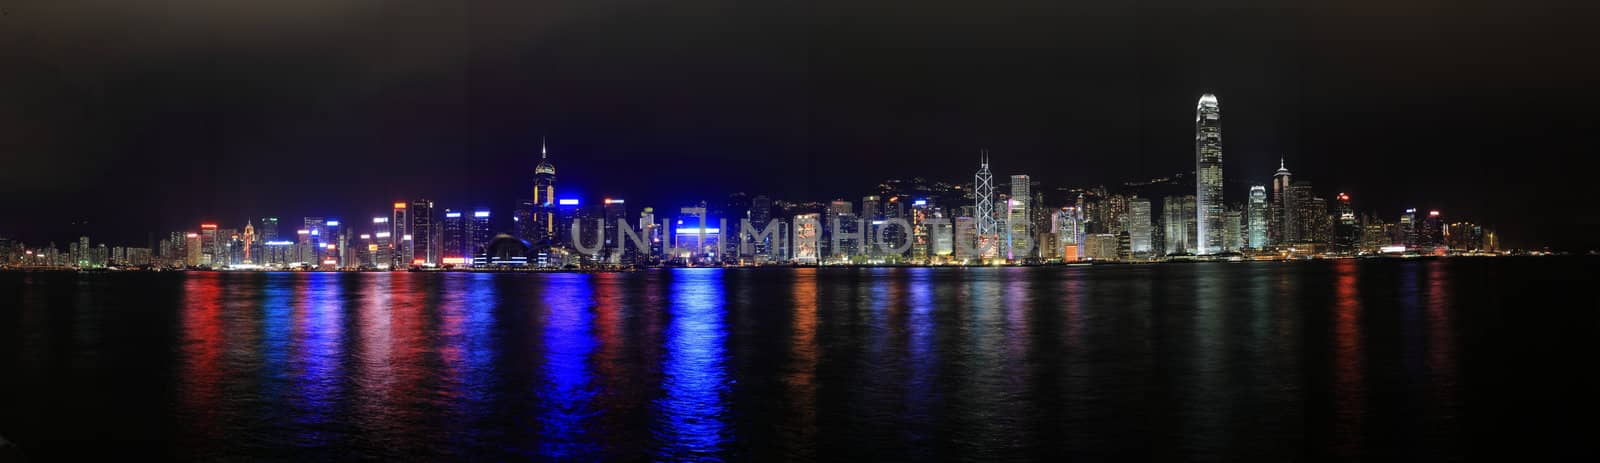 Hong Kong at night panorama by leungchopan